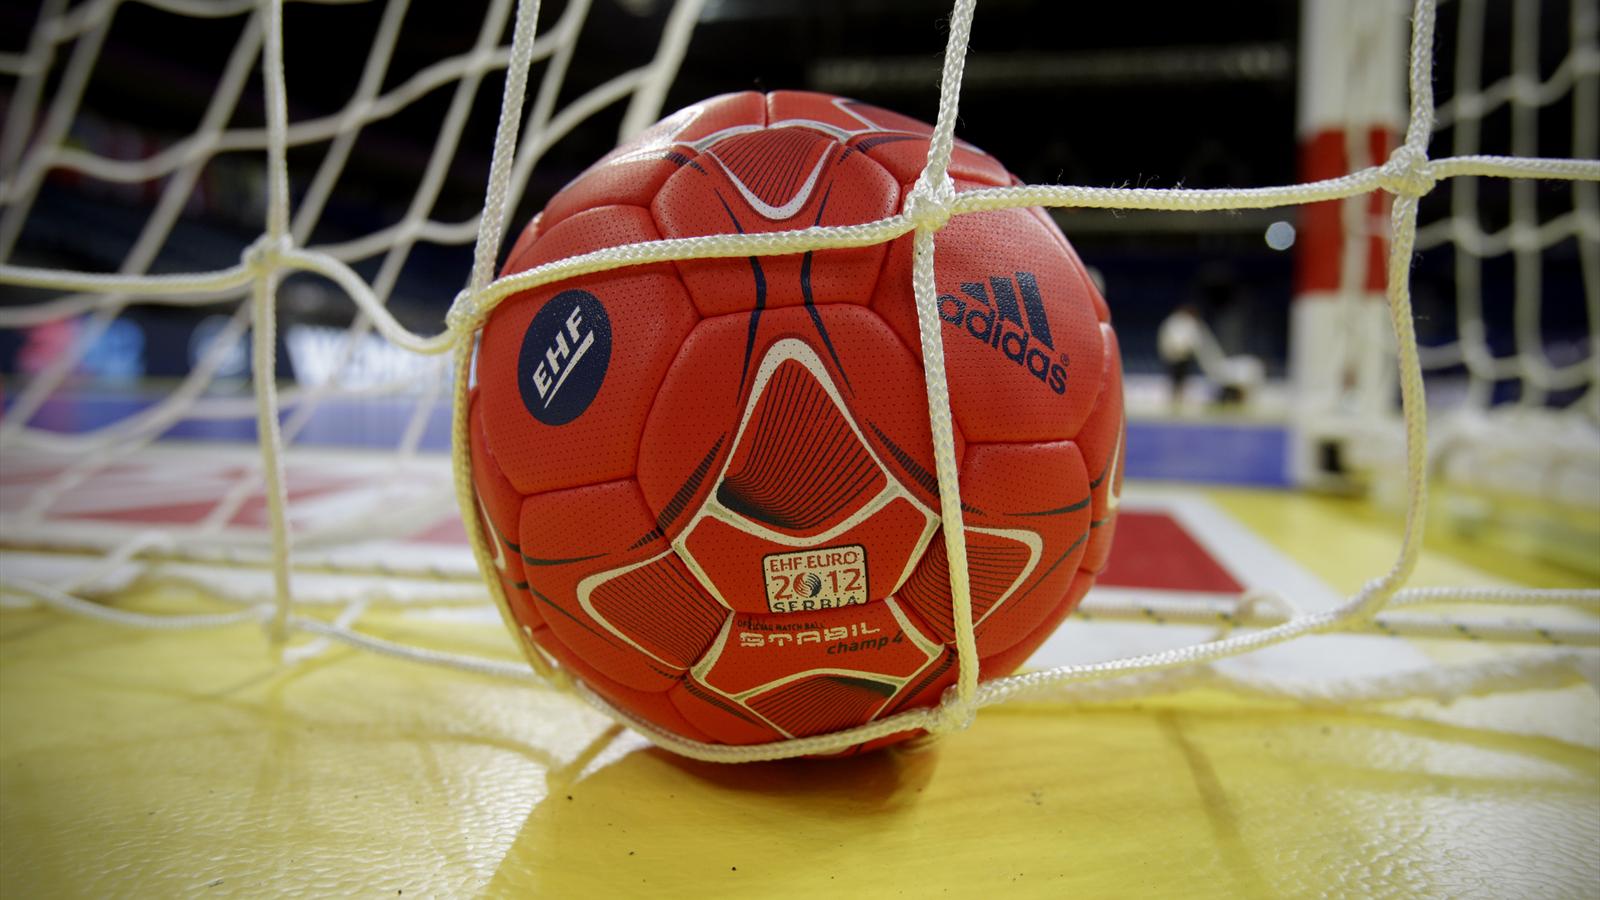 Liga Europeia de andebol: Sporting bate suecos pela margem mínima - BOM DIA  Luxemburgo